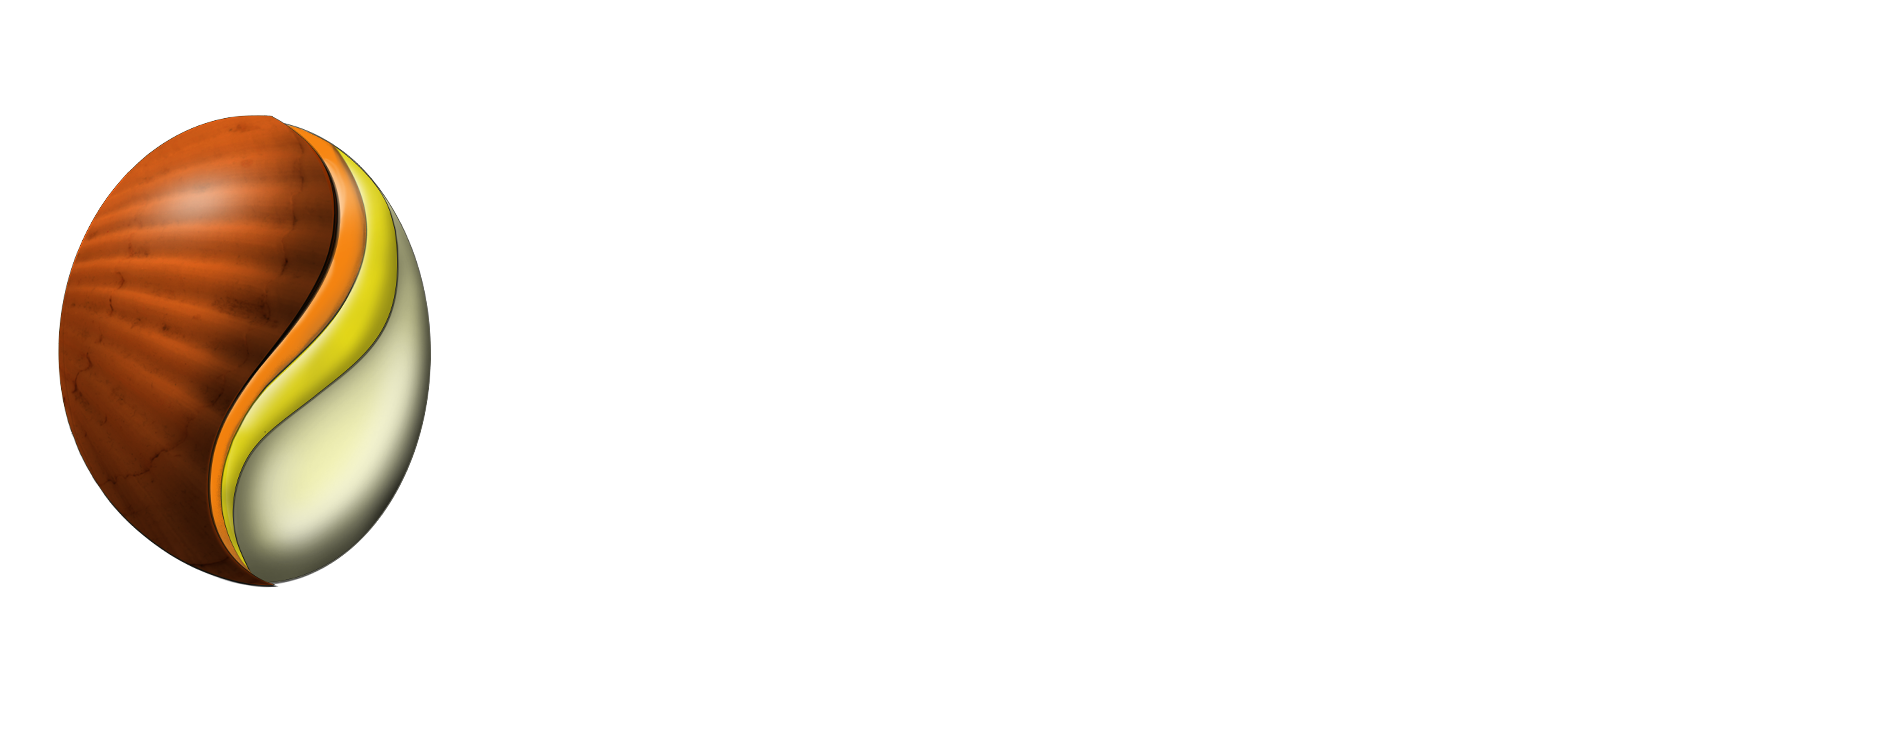 Imzaia World